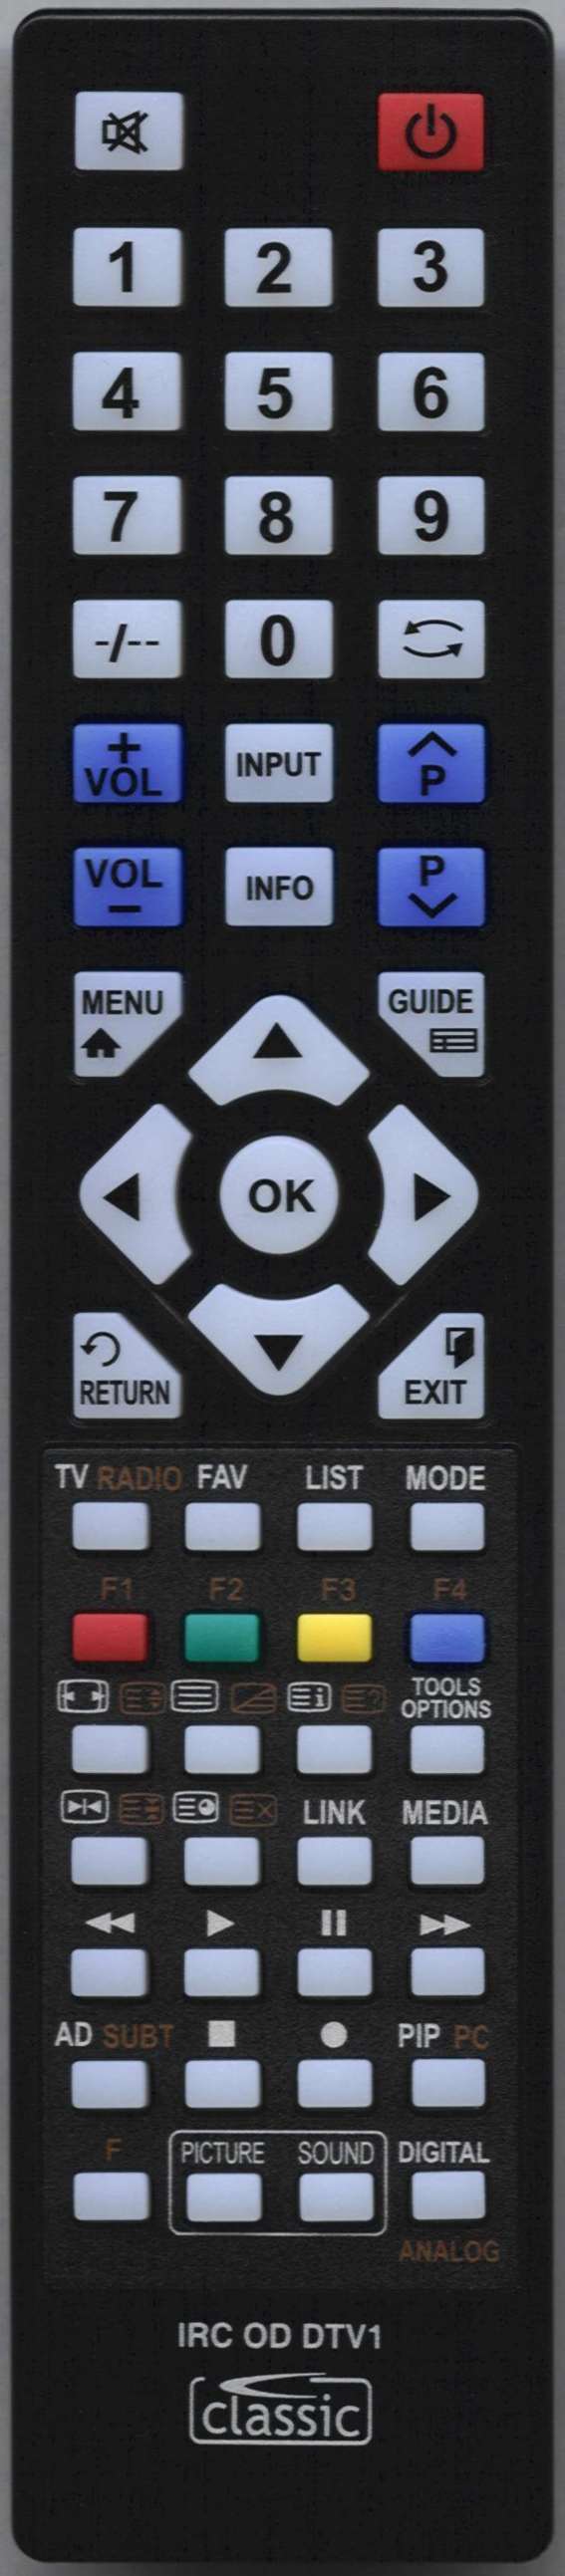 LUXOR 10052992 Remote Control Alternative